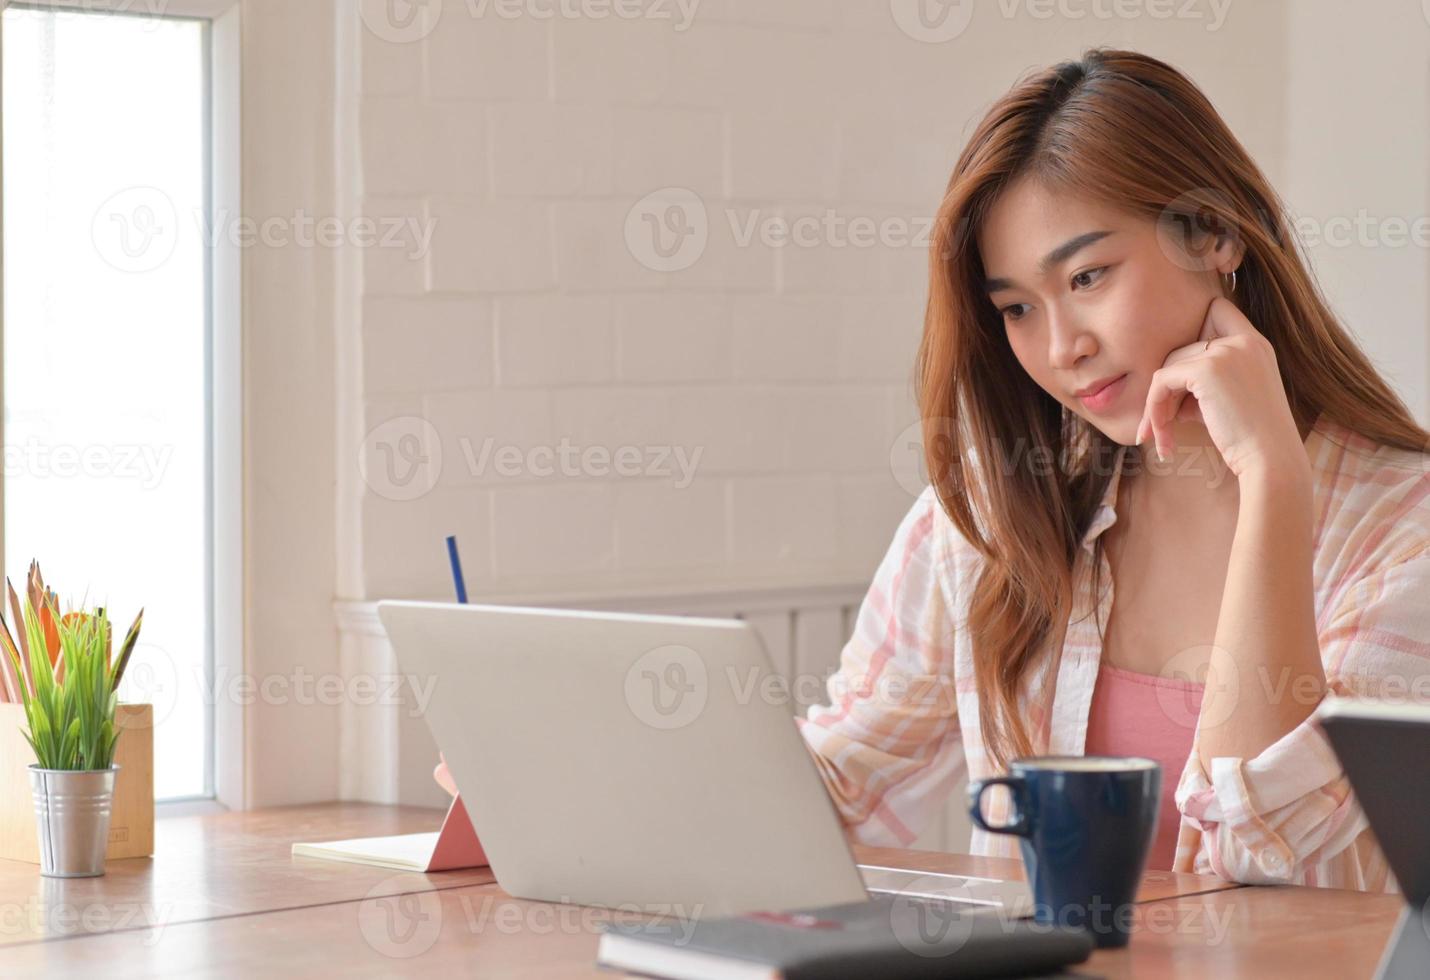 bijgesneden opname van vrouwelijke tienerstudent die thuis online studeert met een laptop. foto